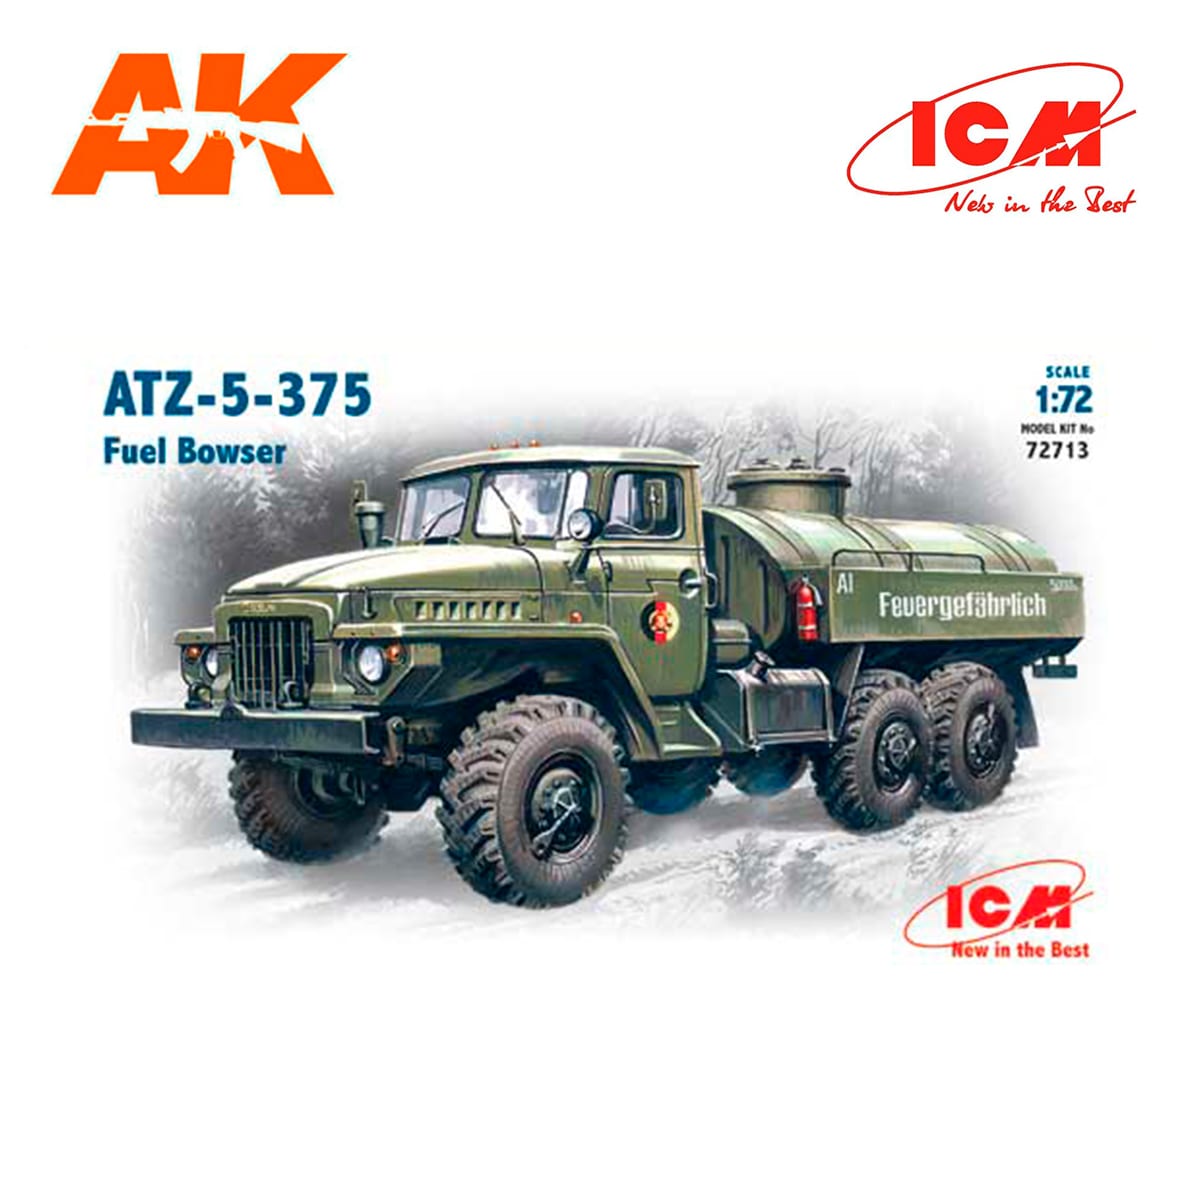 ATZ-5-375, Fuel Bowser 1/72